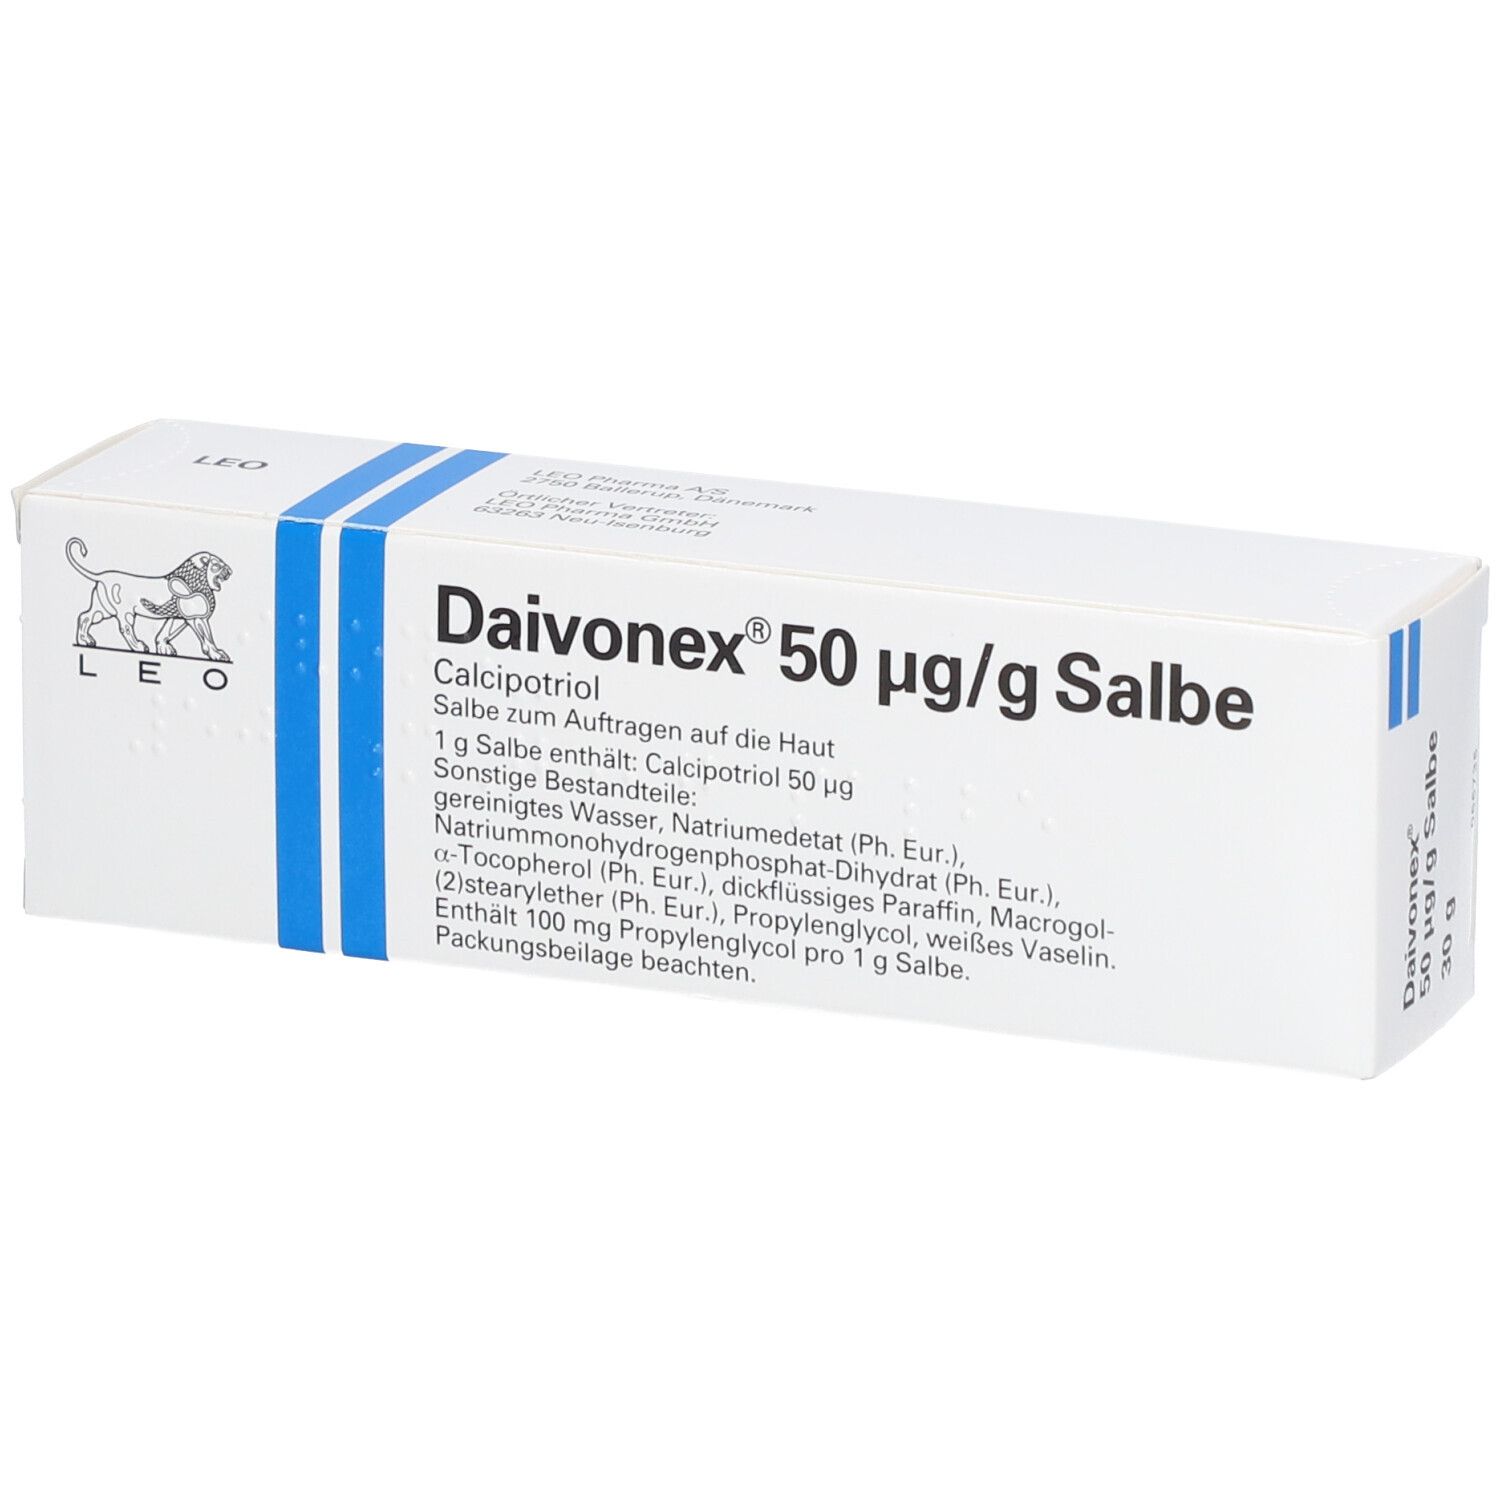 Daivonex® Salbe